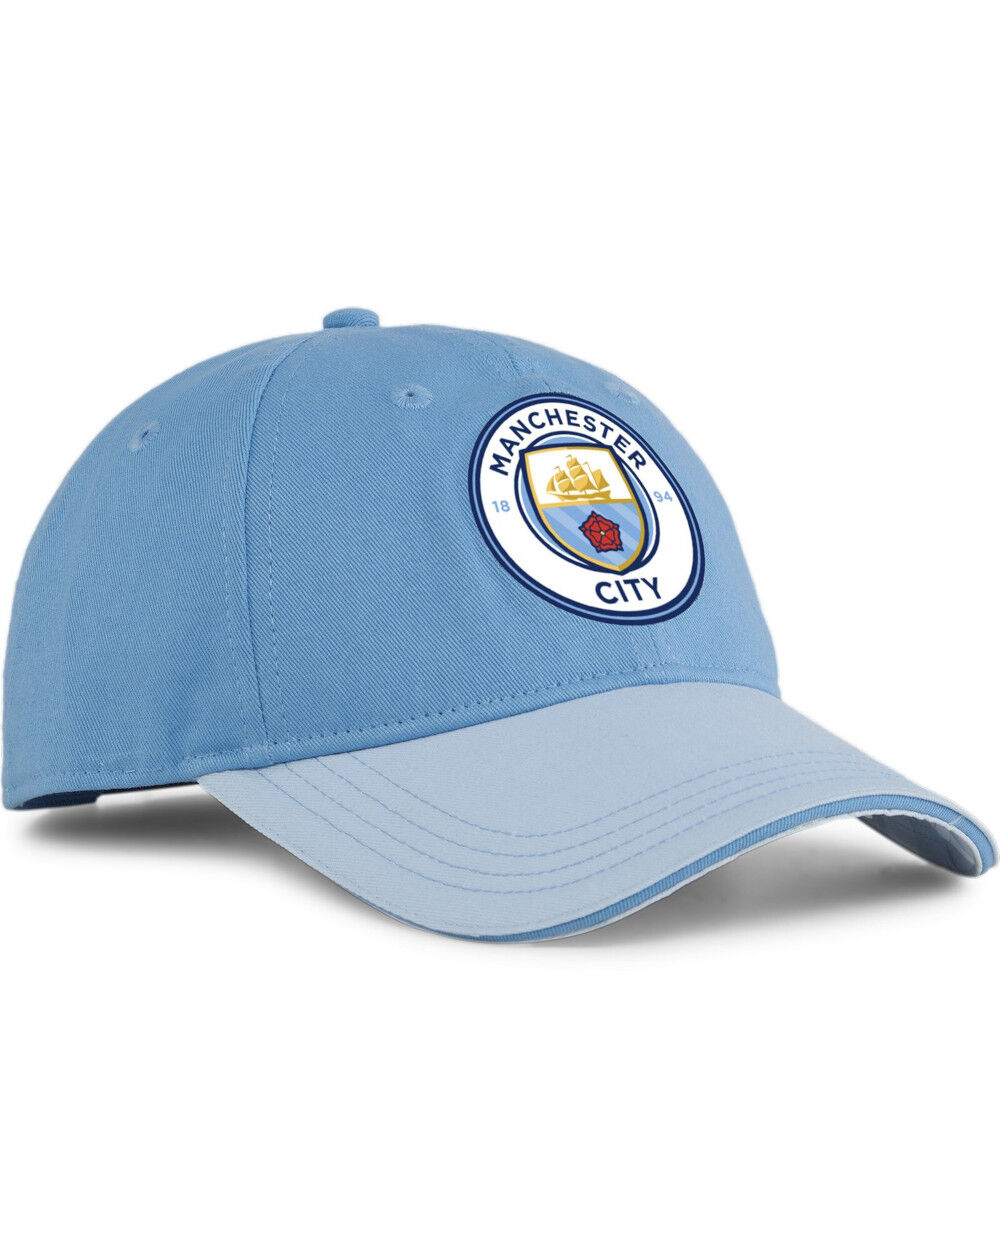 Puma Manchester City Cappello Berretto Unisex Azzurro Baseball Fan Cotone